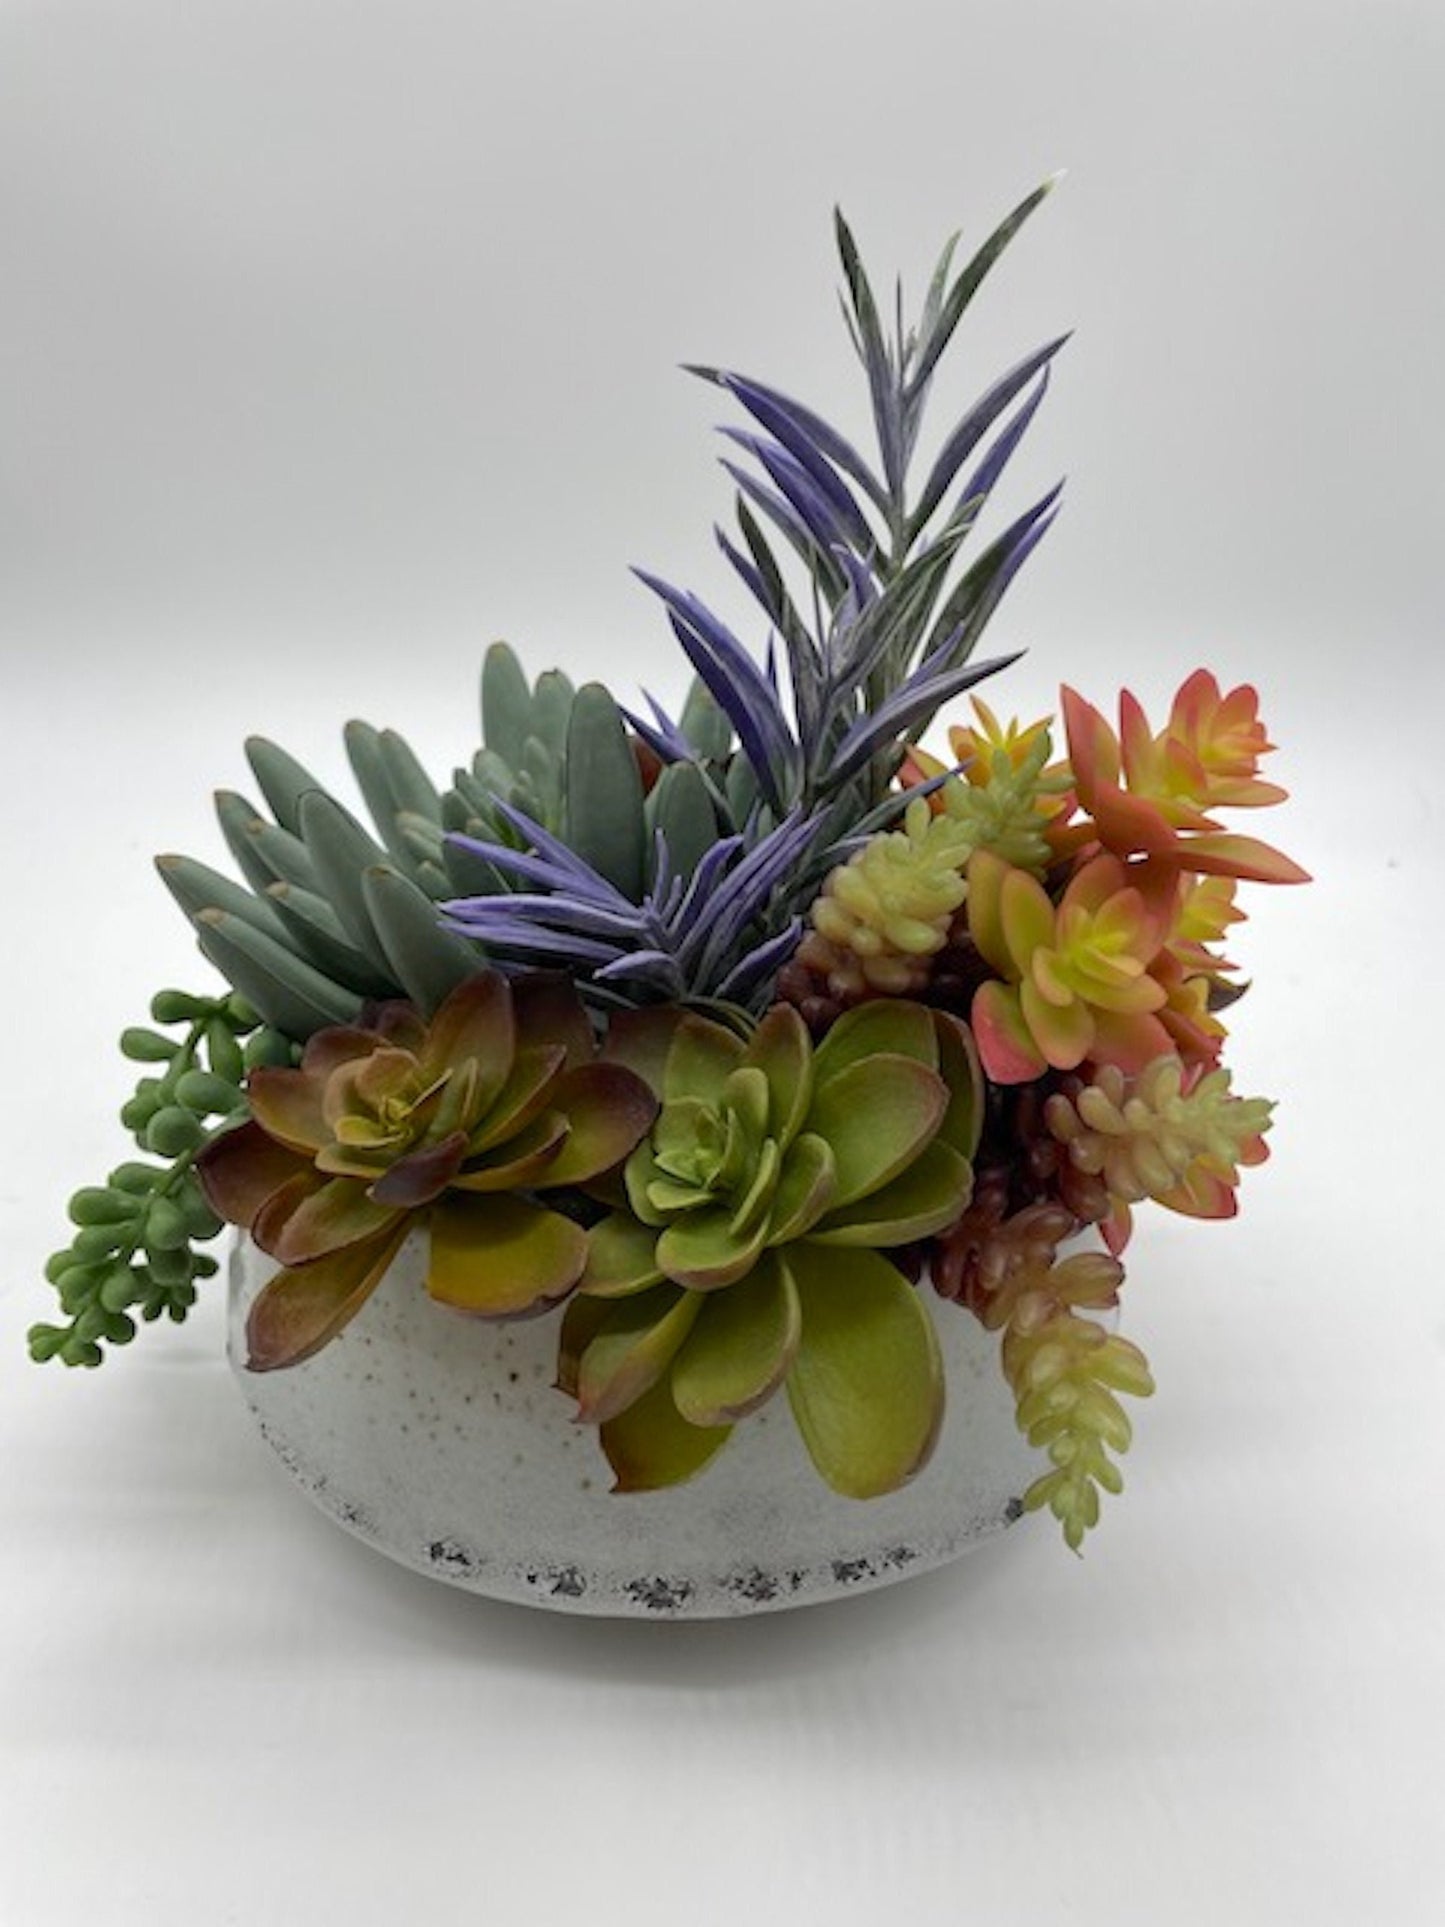 Elegant Succulent Centerpiece, Unique Succulents Arrangement in Ceramic Pot